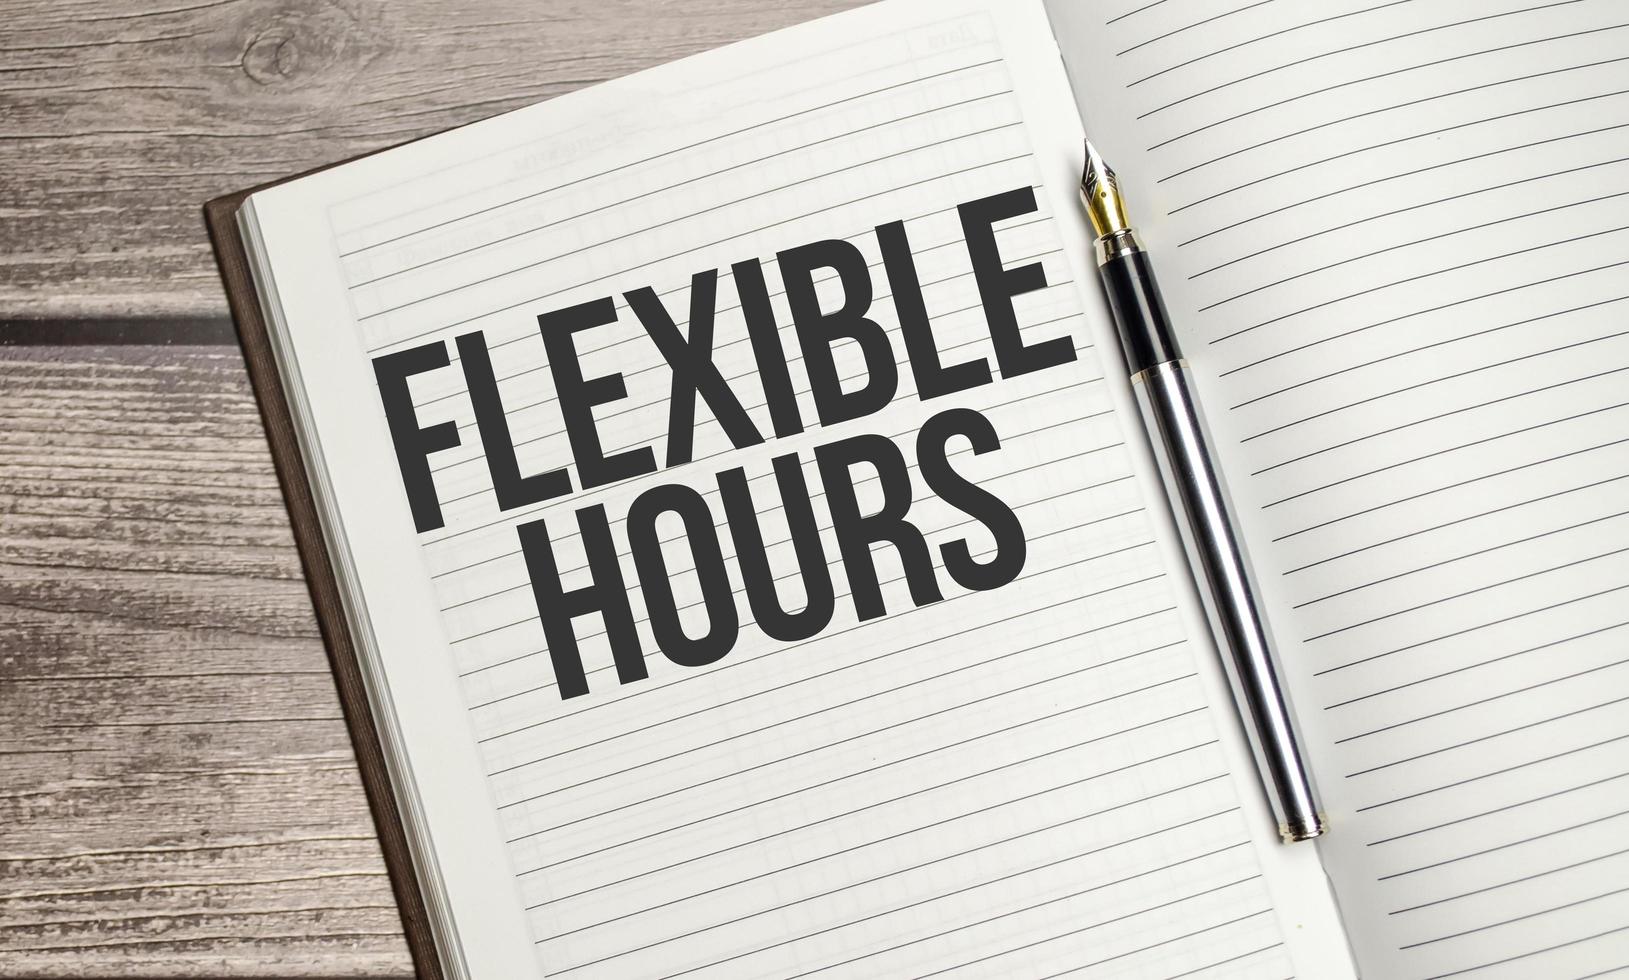 texte d'horaires flexibles sur un bloc-notes avec stylo, entreprise photo